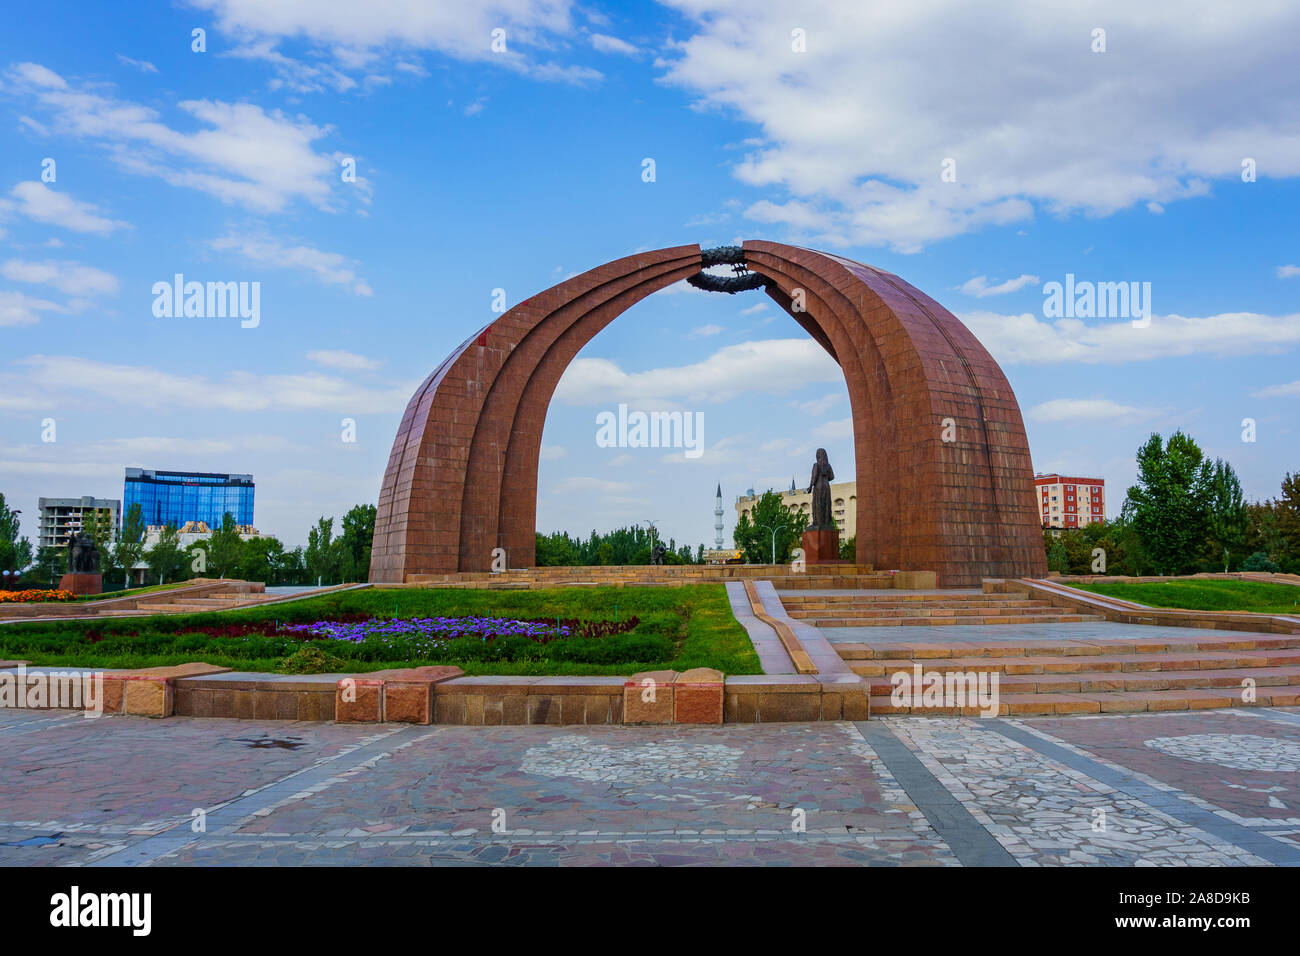 Bishkek, Capital of Kyrgyzstan in Central Asia Stock Photo